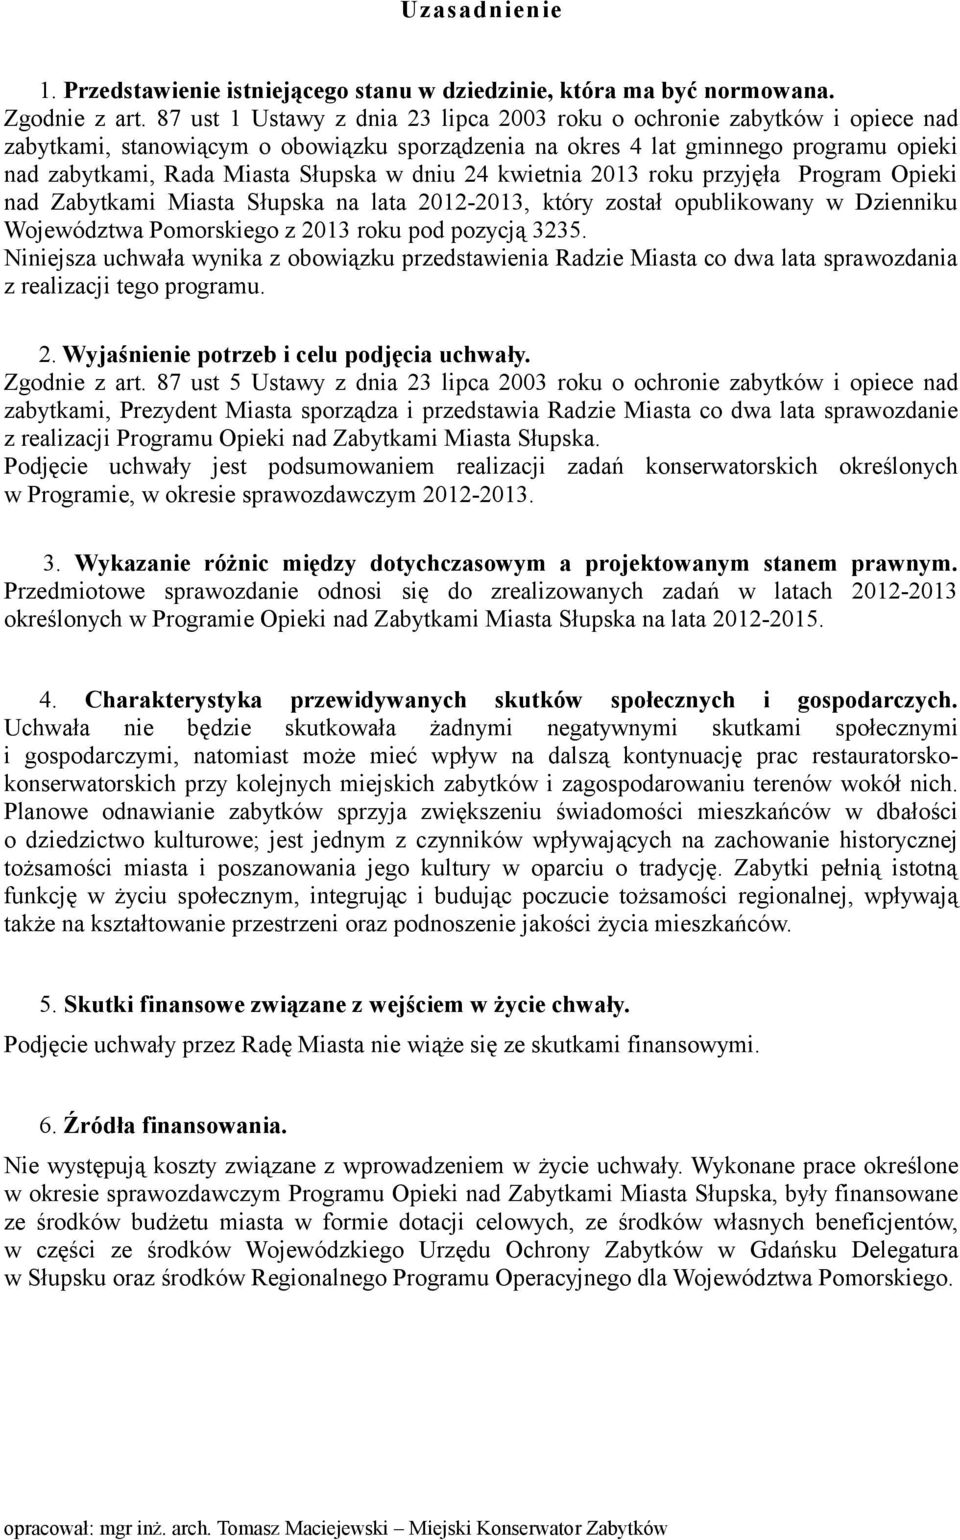 dniu 24 kwietnia 2013 roku przyjęła Program Opieki nad Zabytkami Miasta Słupska na lata 2012-2013, który został opublikowany w Dzienniku Województwa Pomorskiego z 2013 roku pod pozycją 3235.